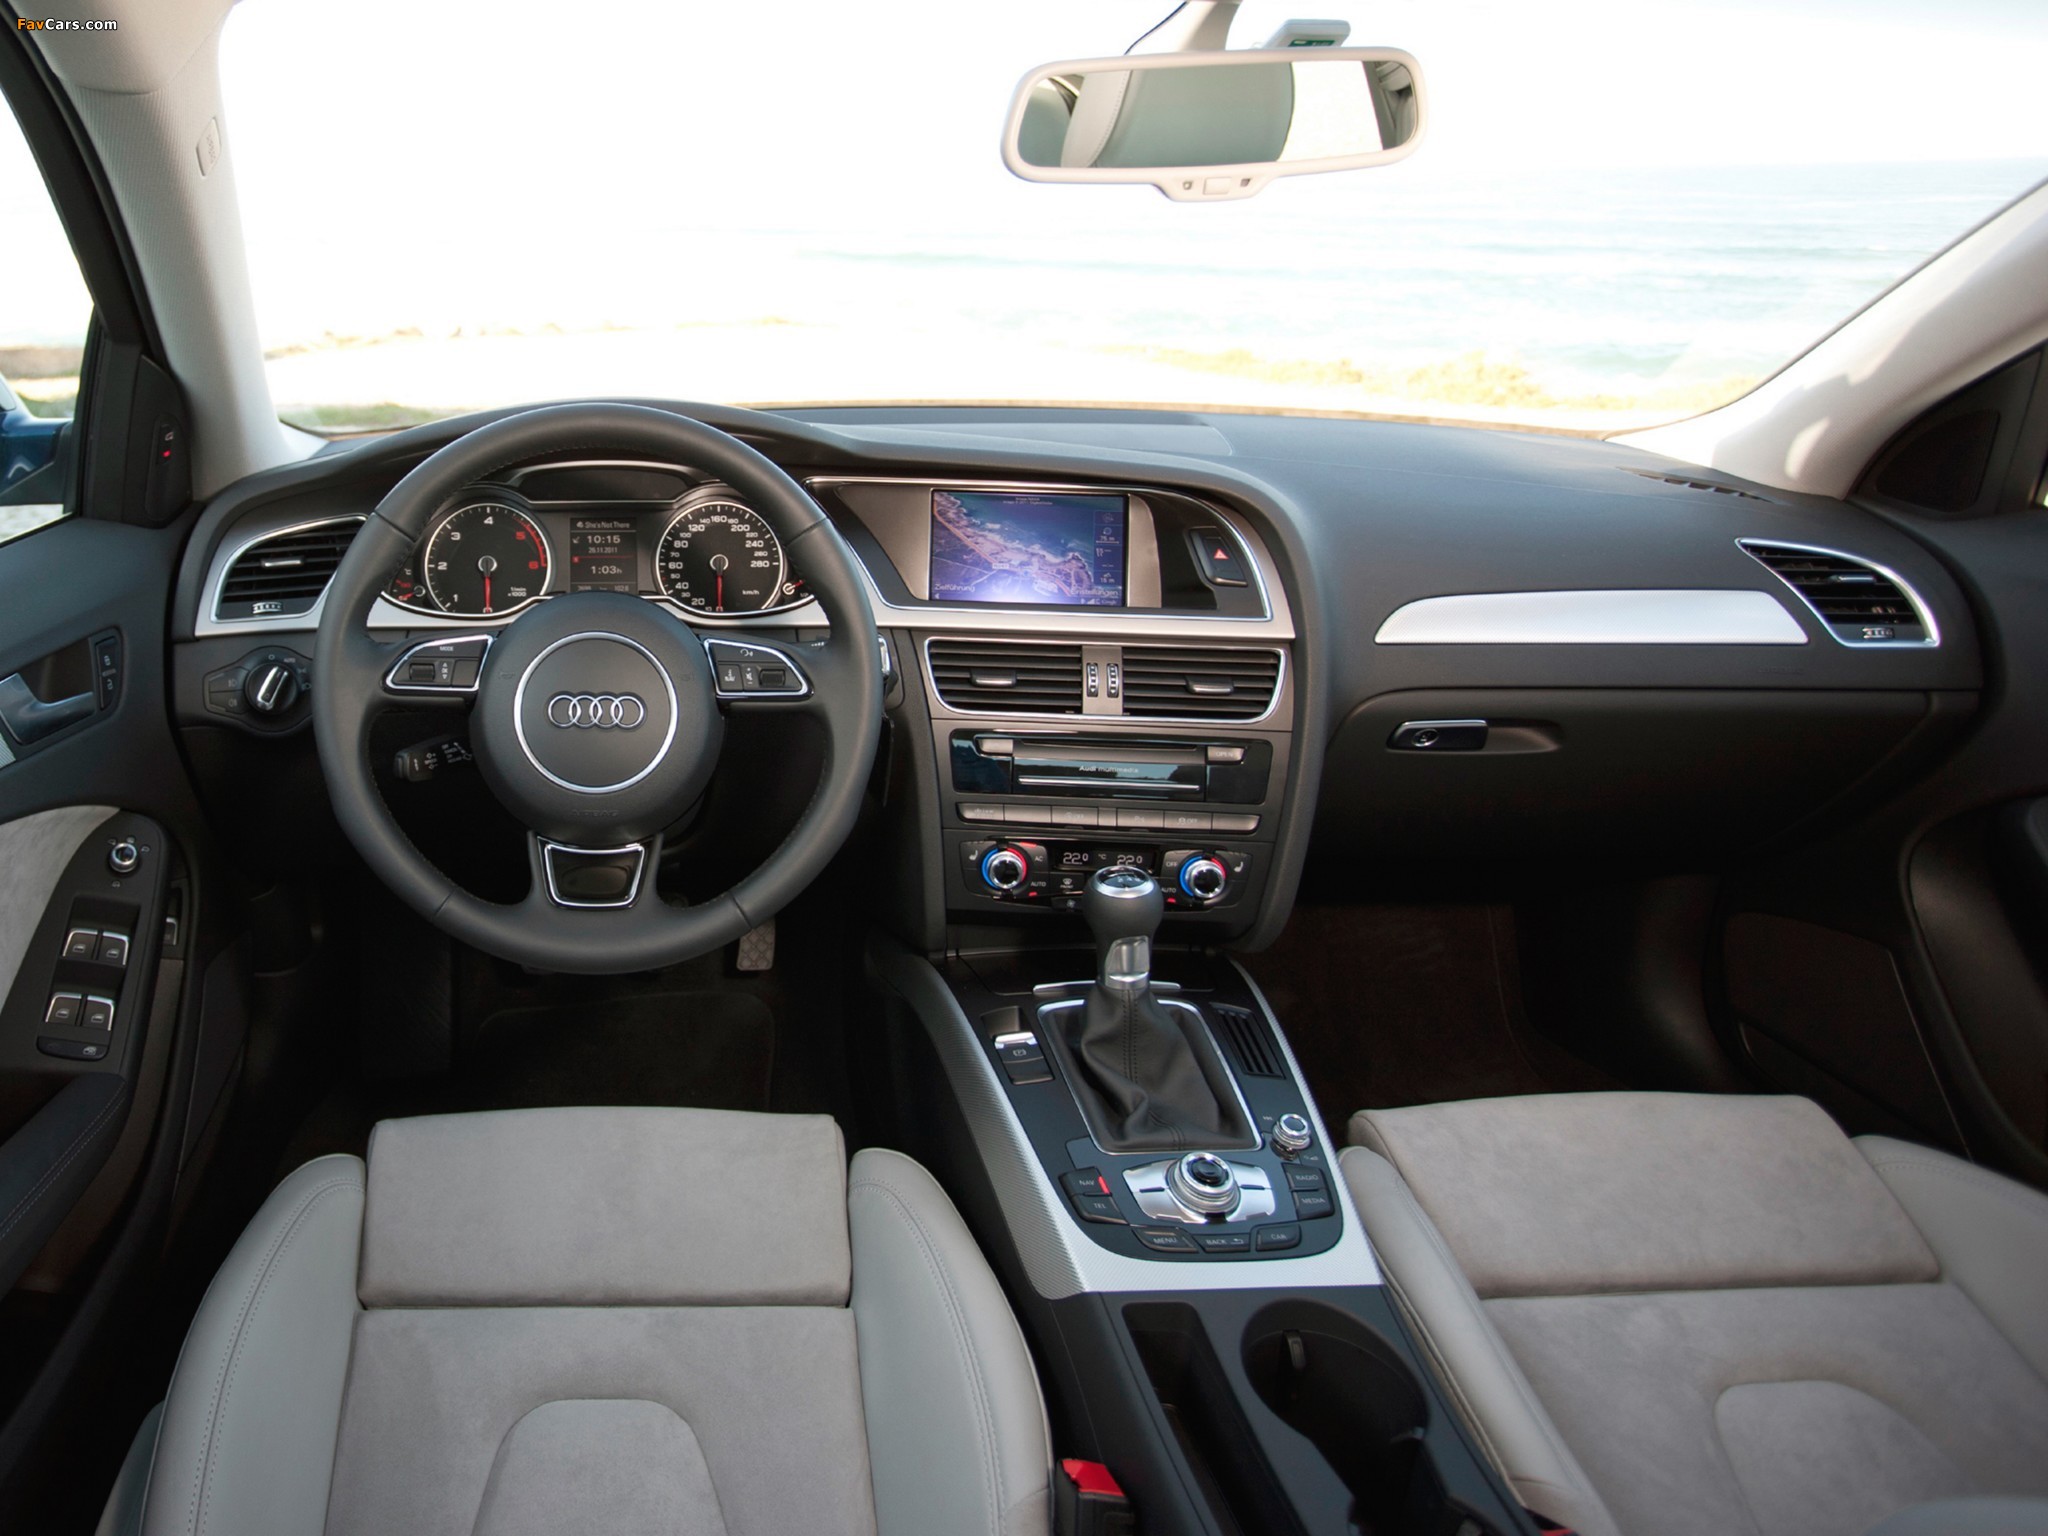 Как работает ассистент трогания АНА на Audi А4 В8? фото